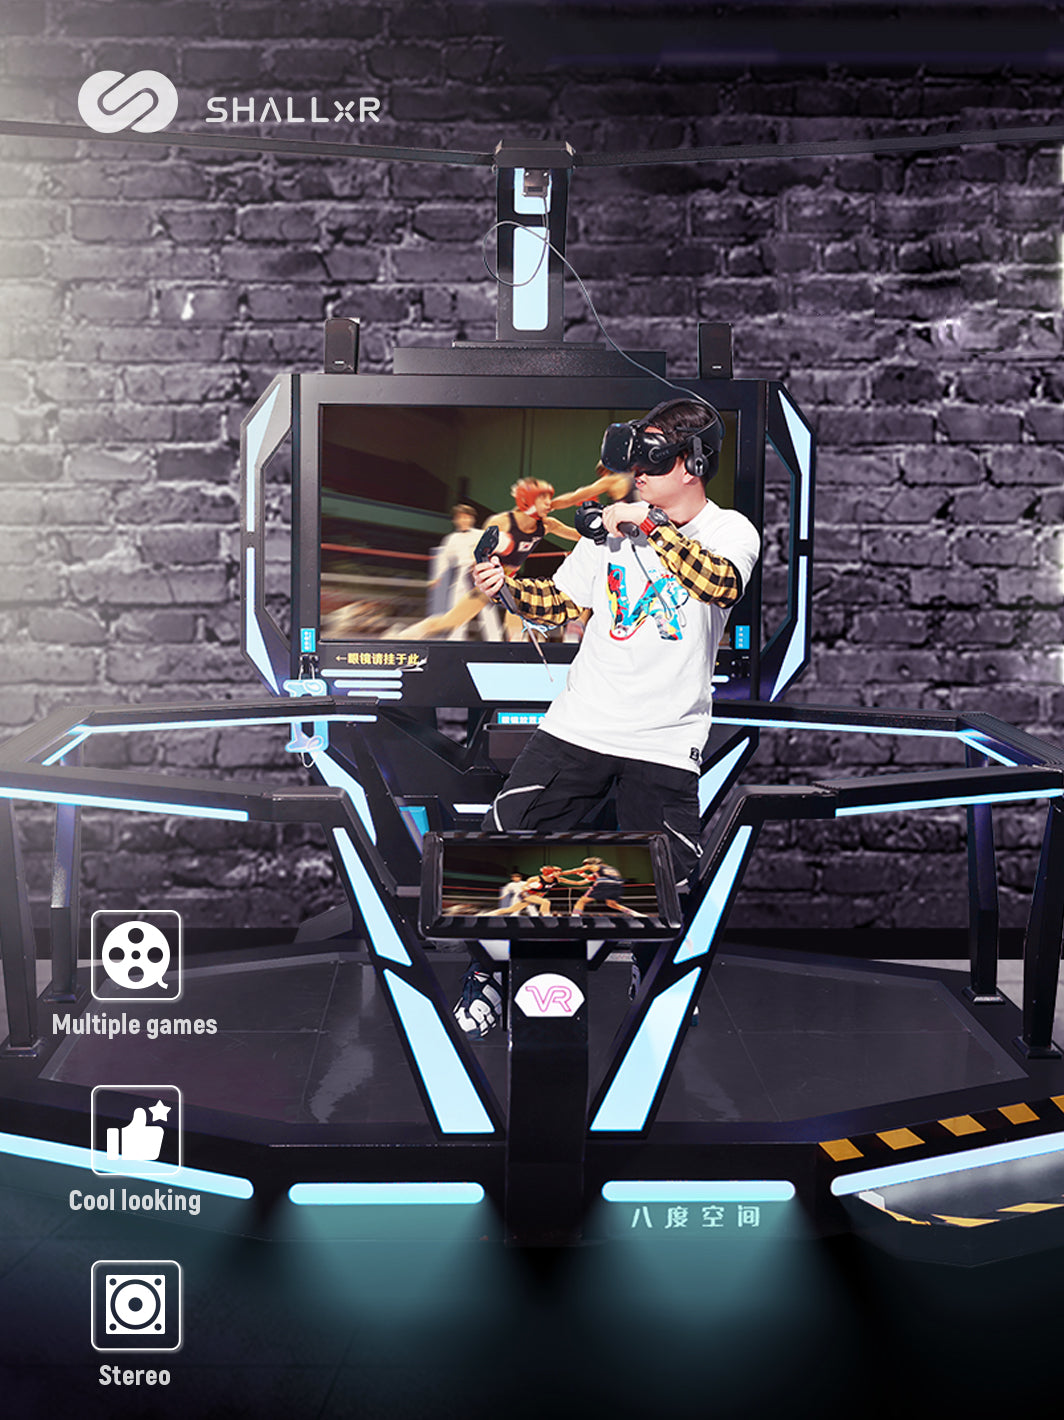 VR espace shooting simulator - ShallxR